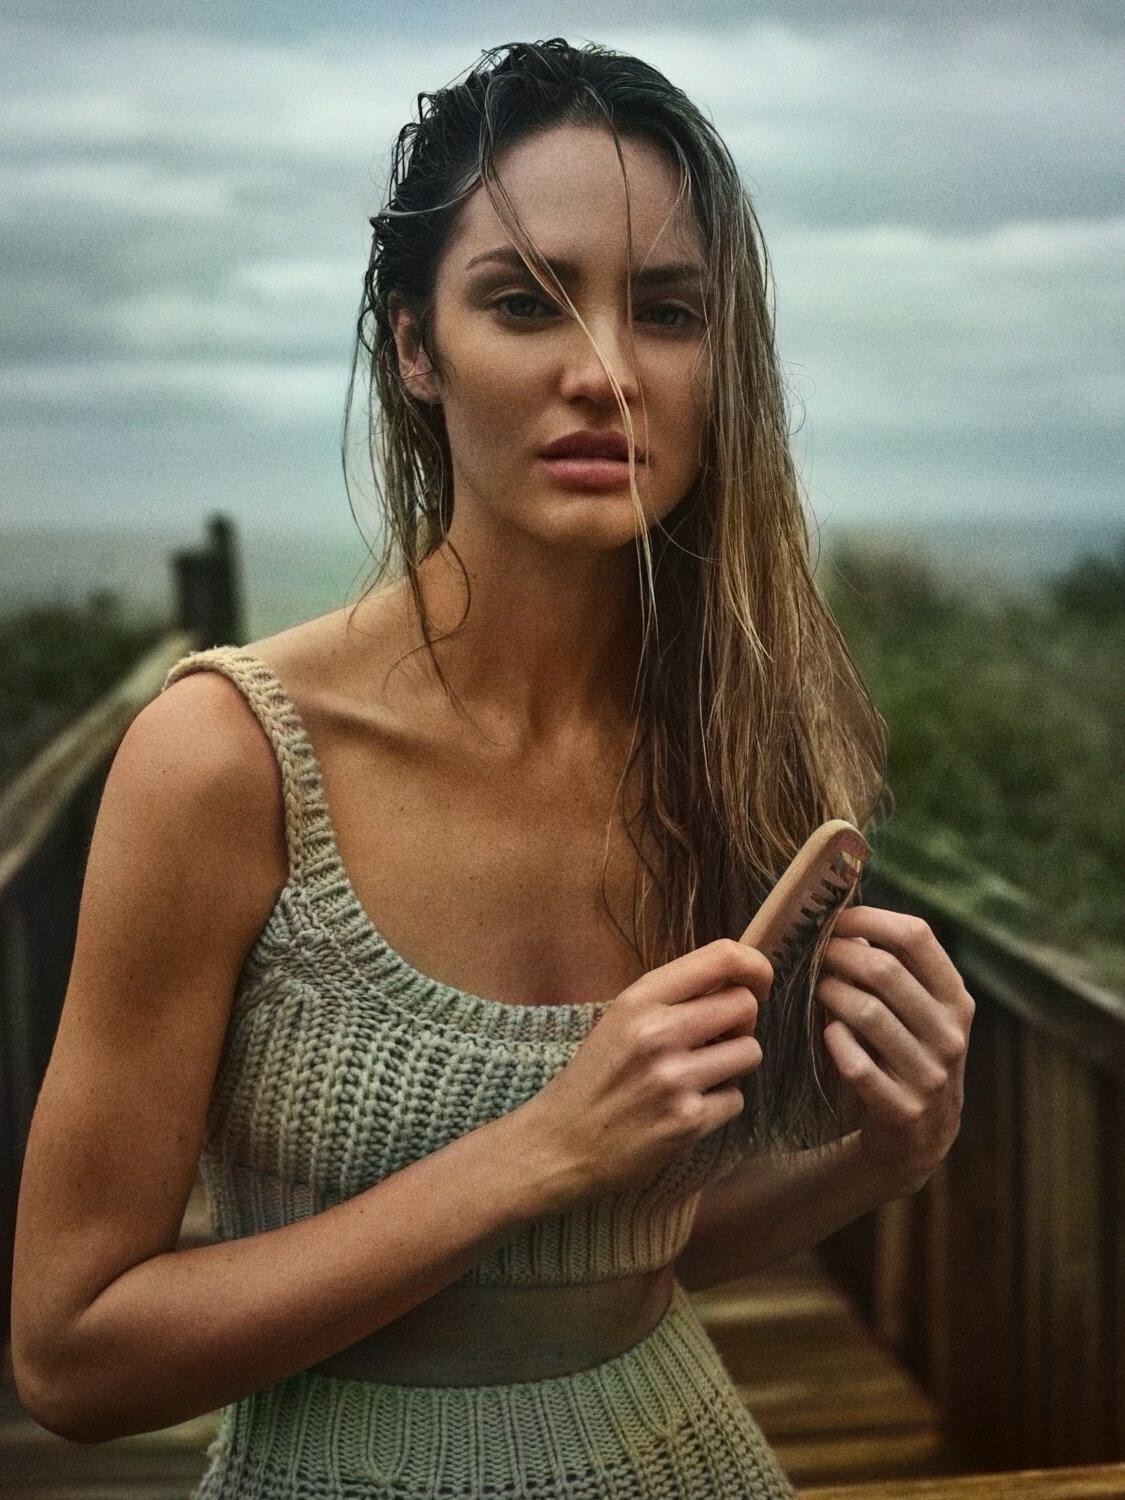 荒岛-Dasha Taran 俄罗斯美女模特壁纸 达莎塔兰街拍写真摄影图片 - 知乎